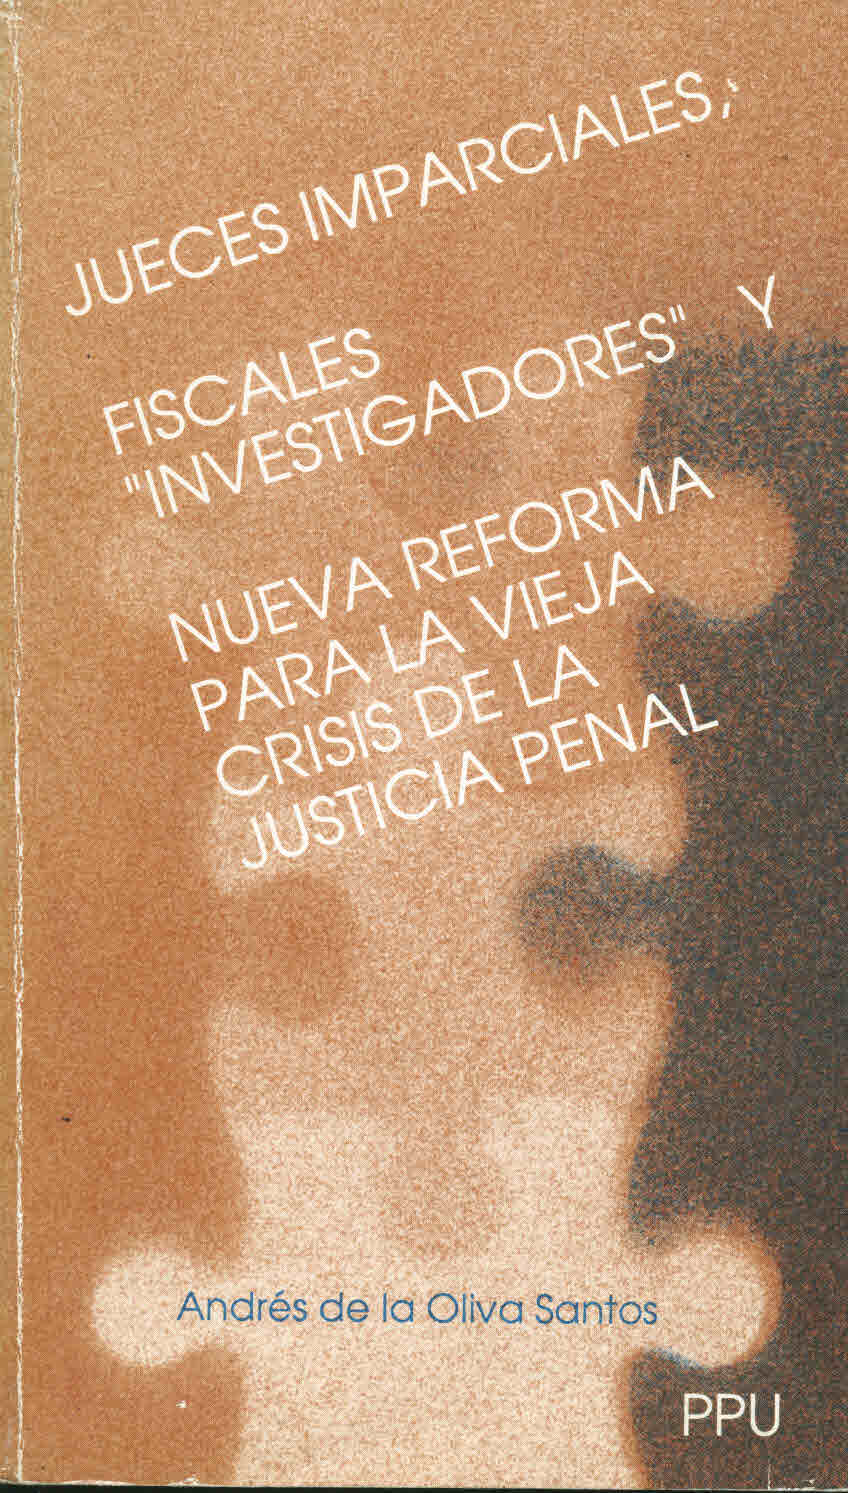 Jueces imparciales, fiscales ''investigadores'', y nueva reforma para la vieja crisis de la Justicia Penal 